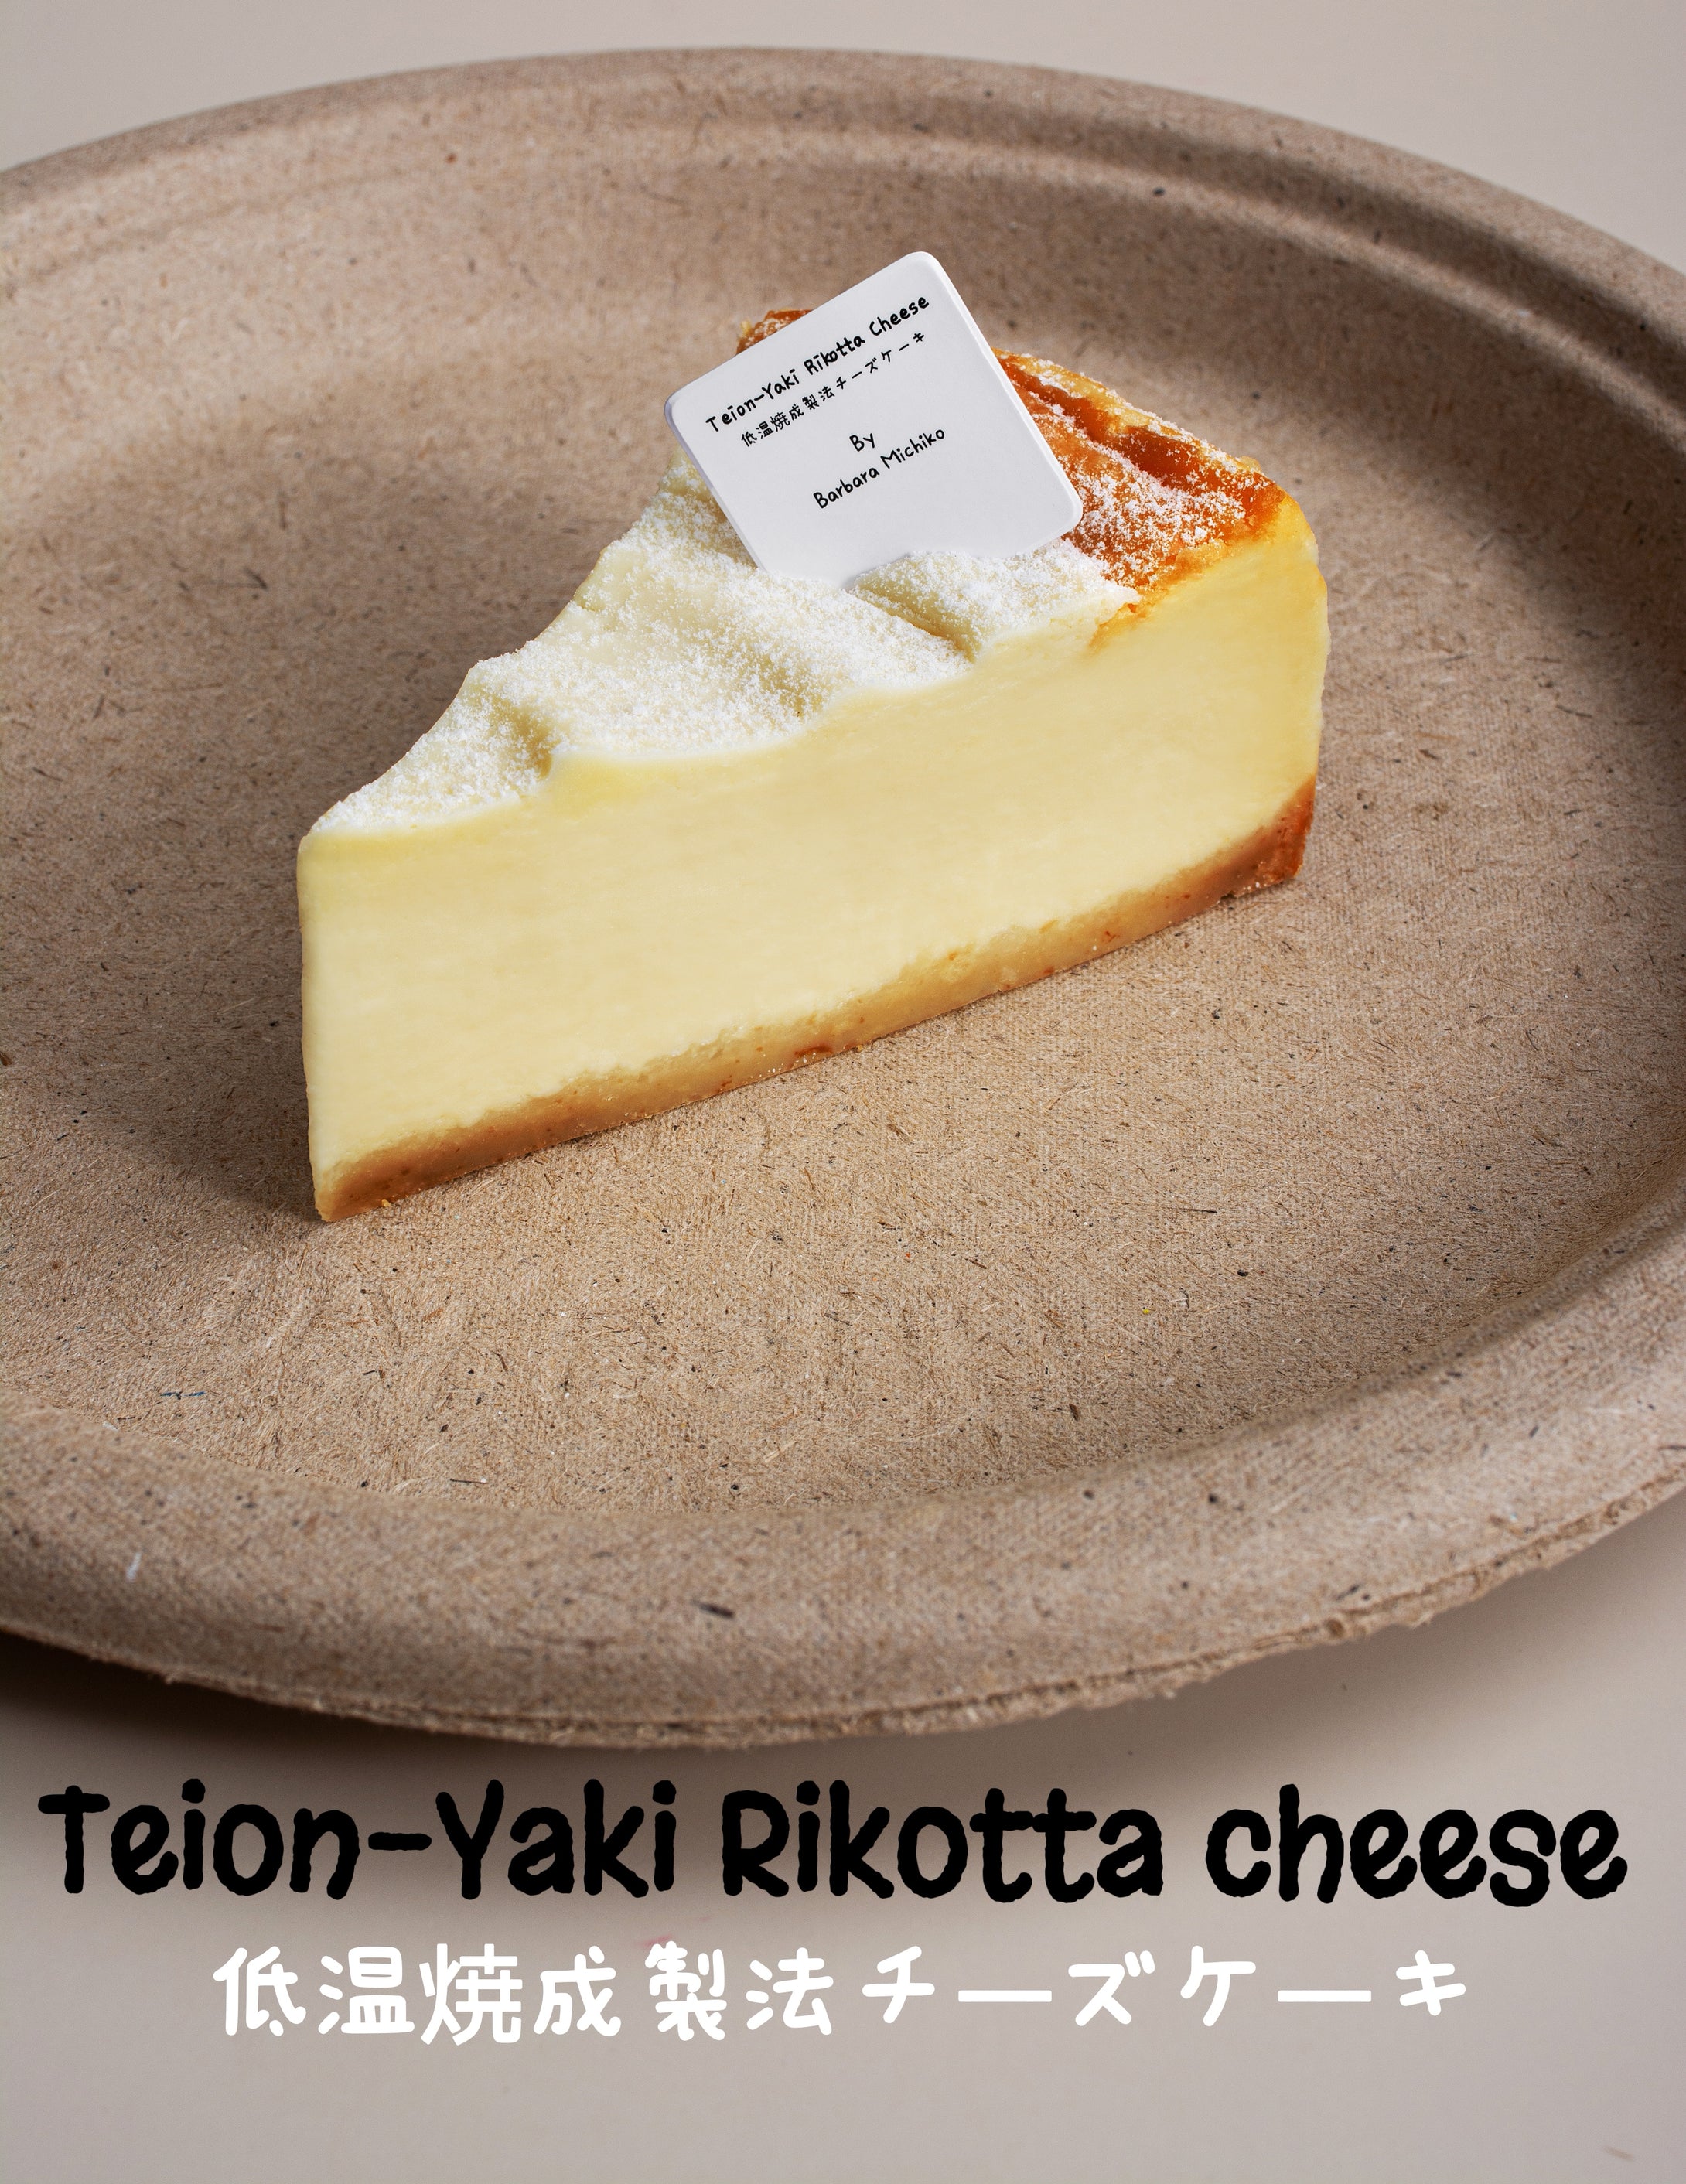 Teion-Yaki Rikotta cheese 低温焼成製法チーズケーキ (20s)